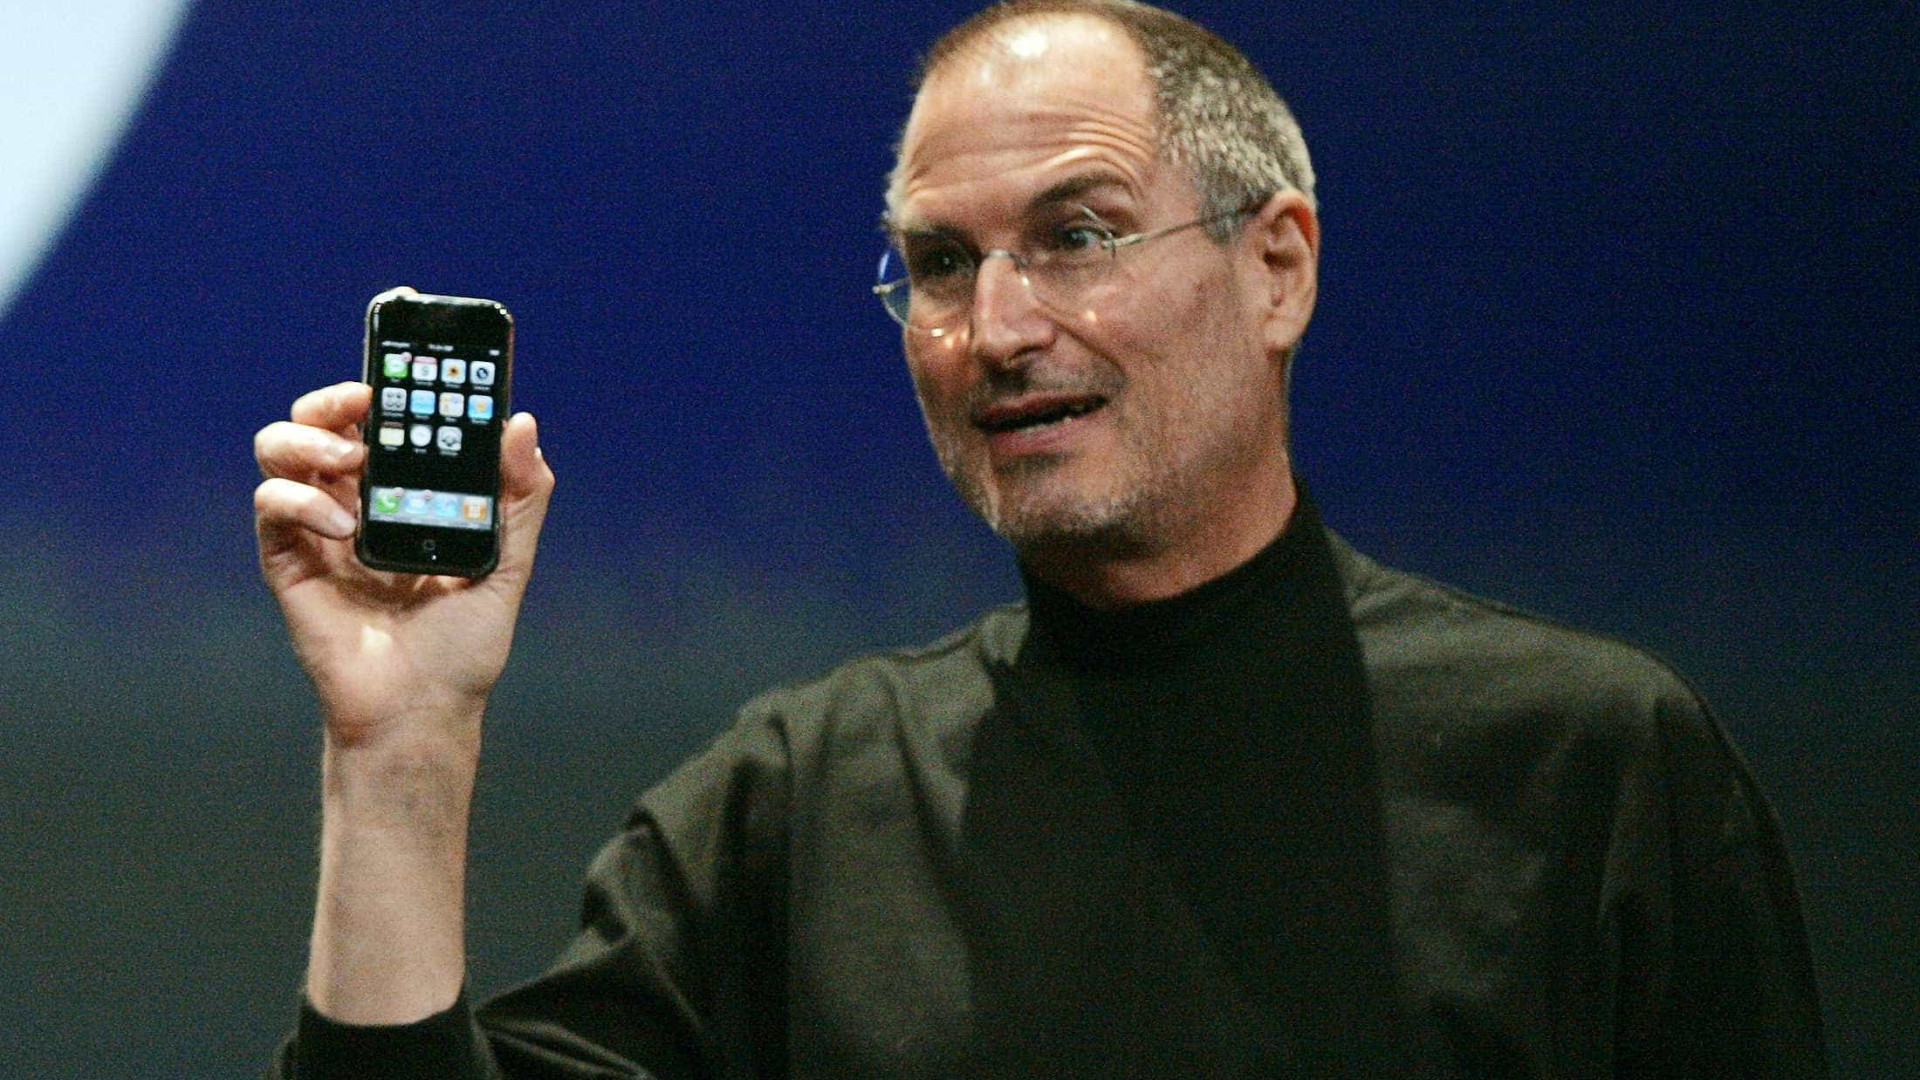 Steve Jobs desvendou o iPhone original há 13 anos